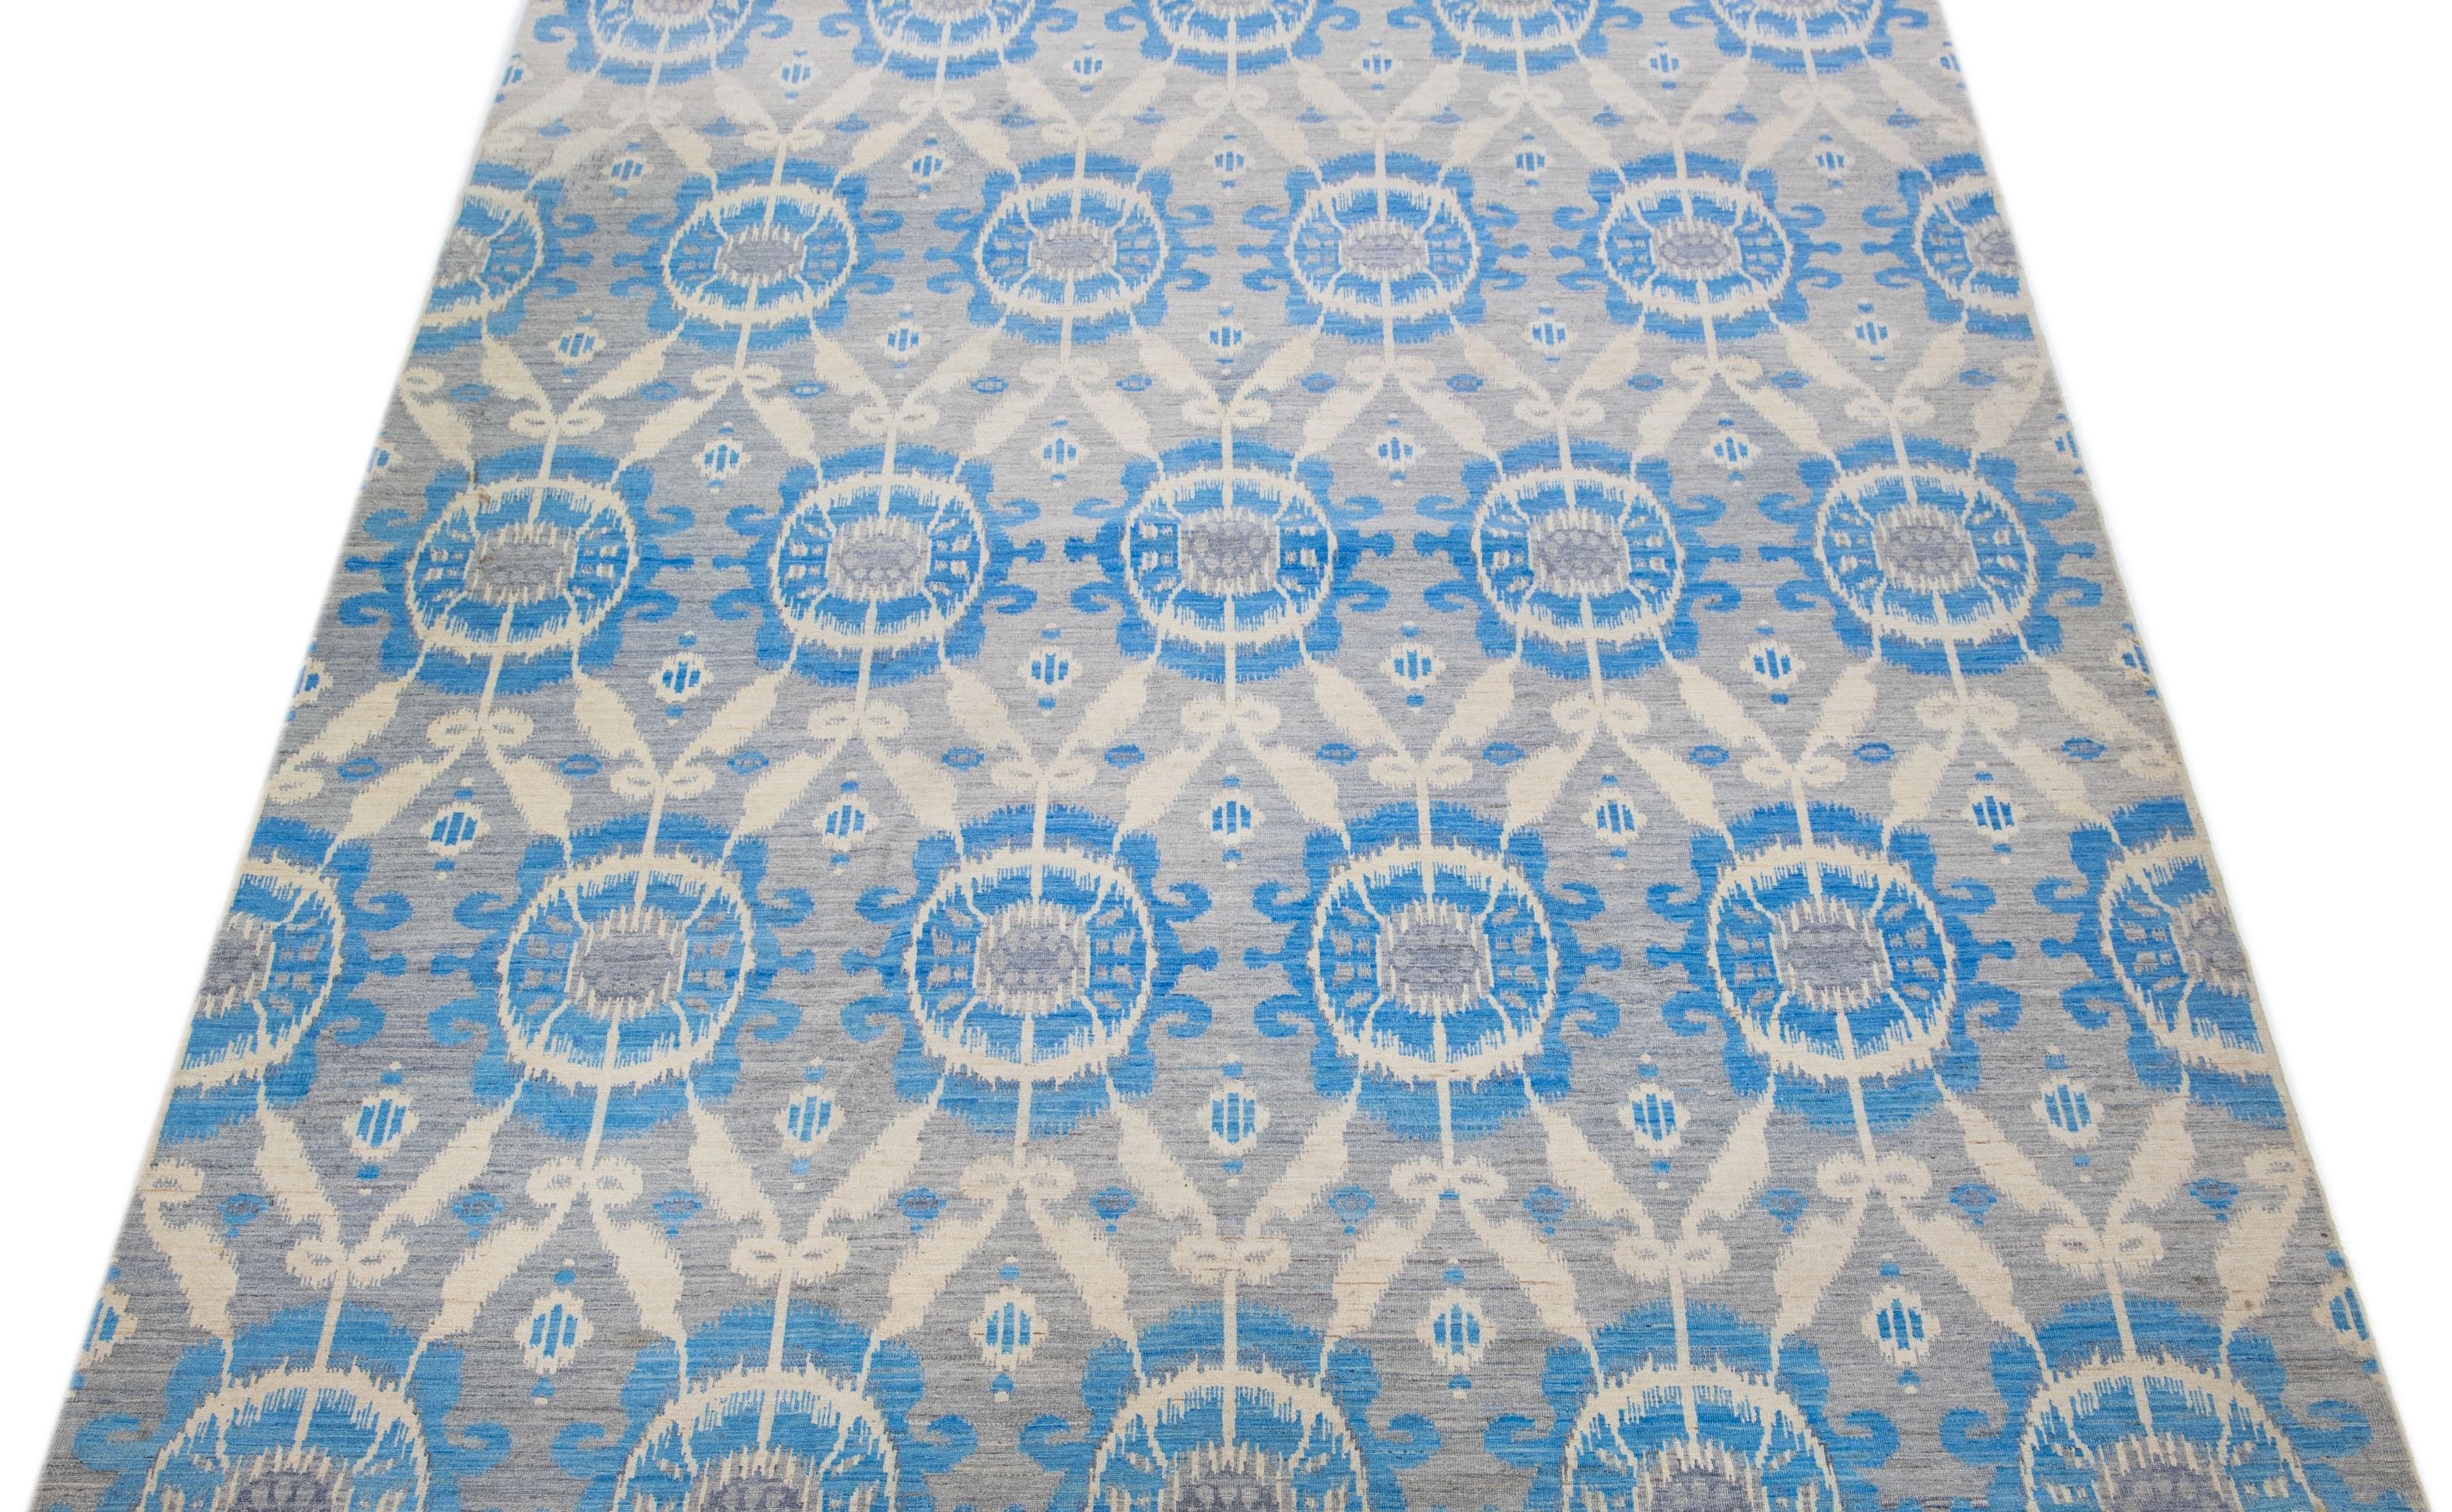 Dieser atemberaubende Ikat-Teppich ist aus Wolle handgeknüpft und zeichnet sich durch ein stilvolles graues Farbfeld aus. Das geometrische Allover-Muster wird durch elegante Blau- und Beigetöne akzentuiert und ist eine wunderbare Ergänzung für jeden